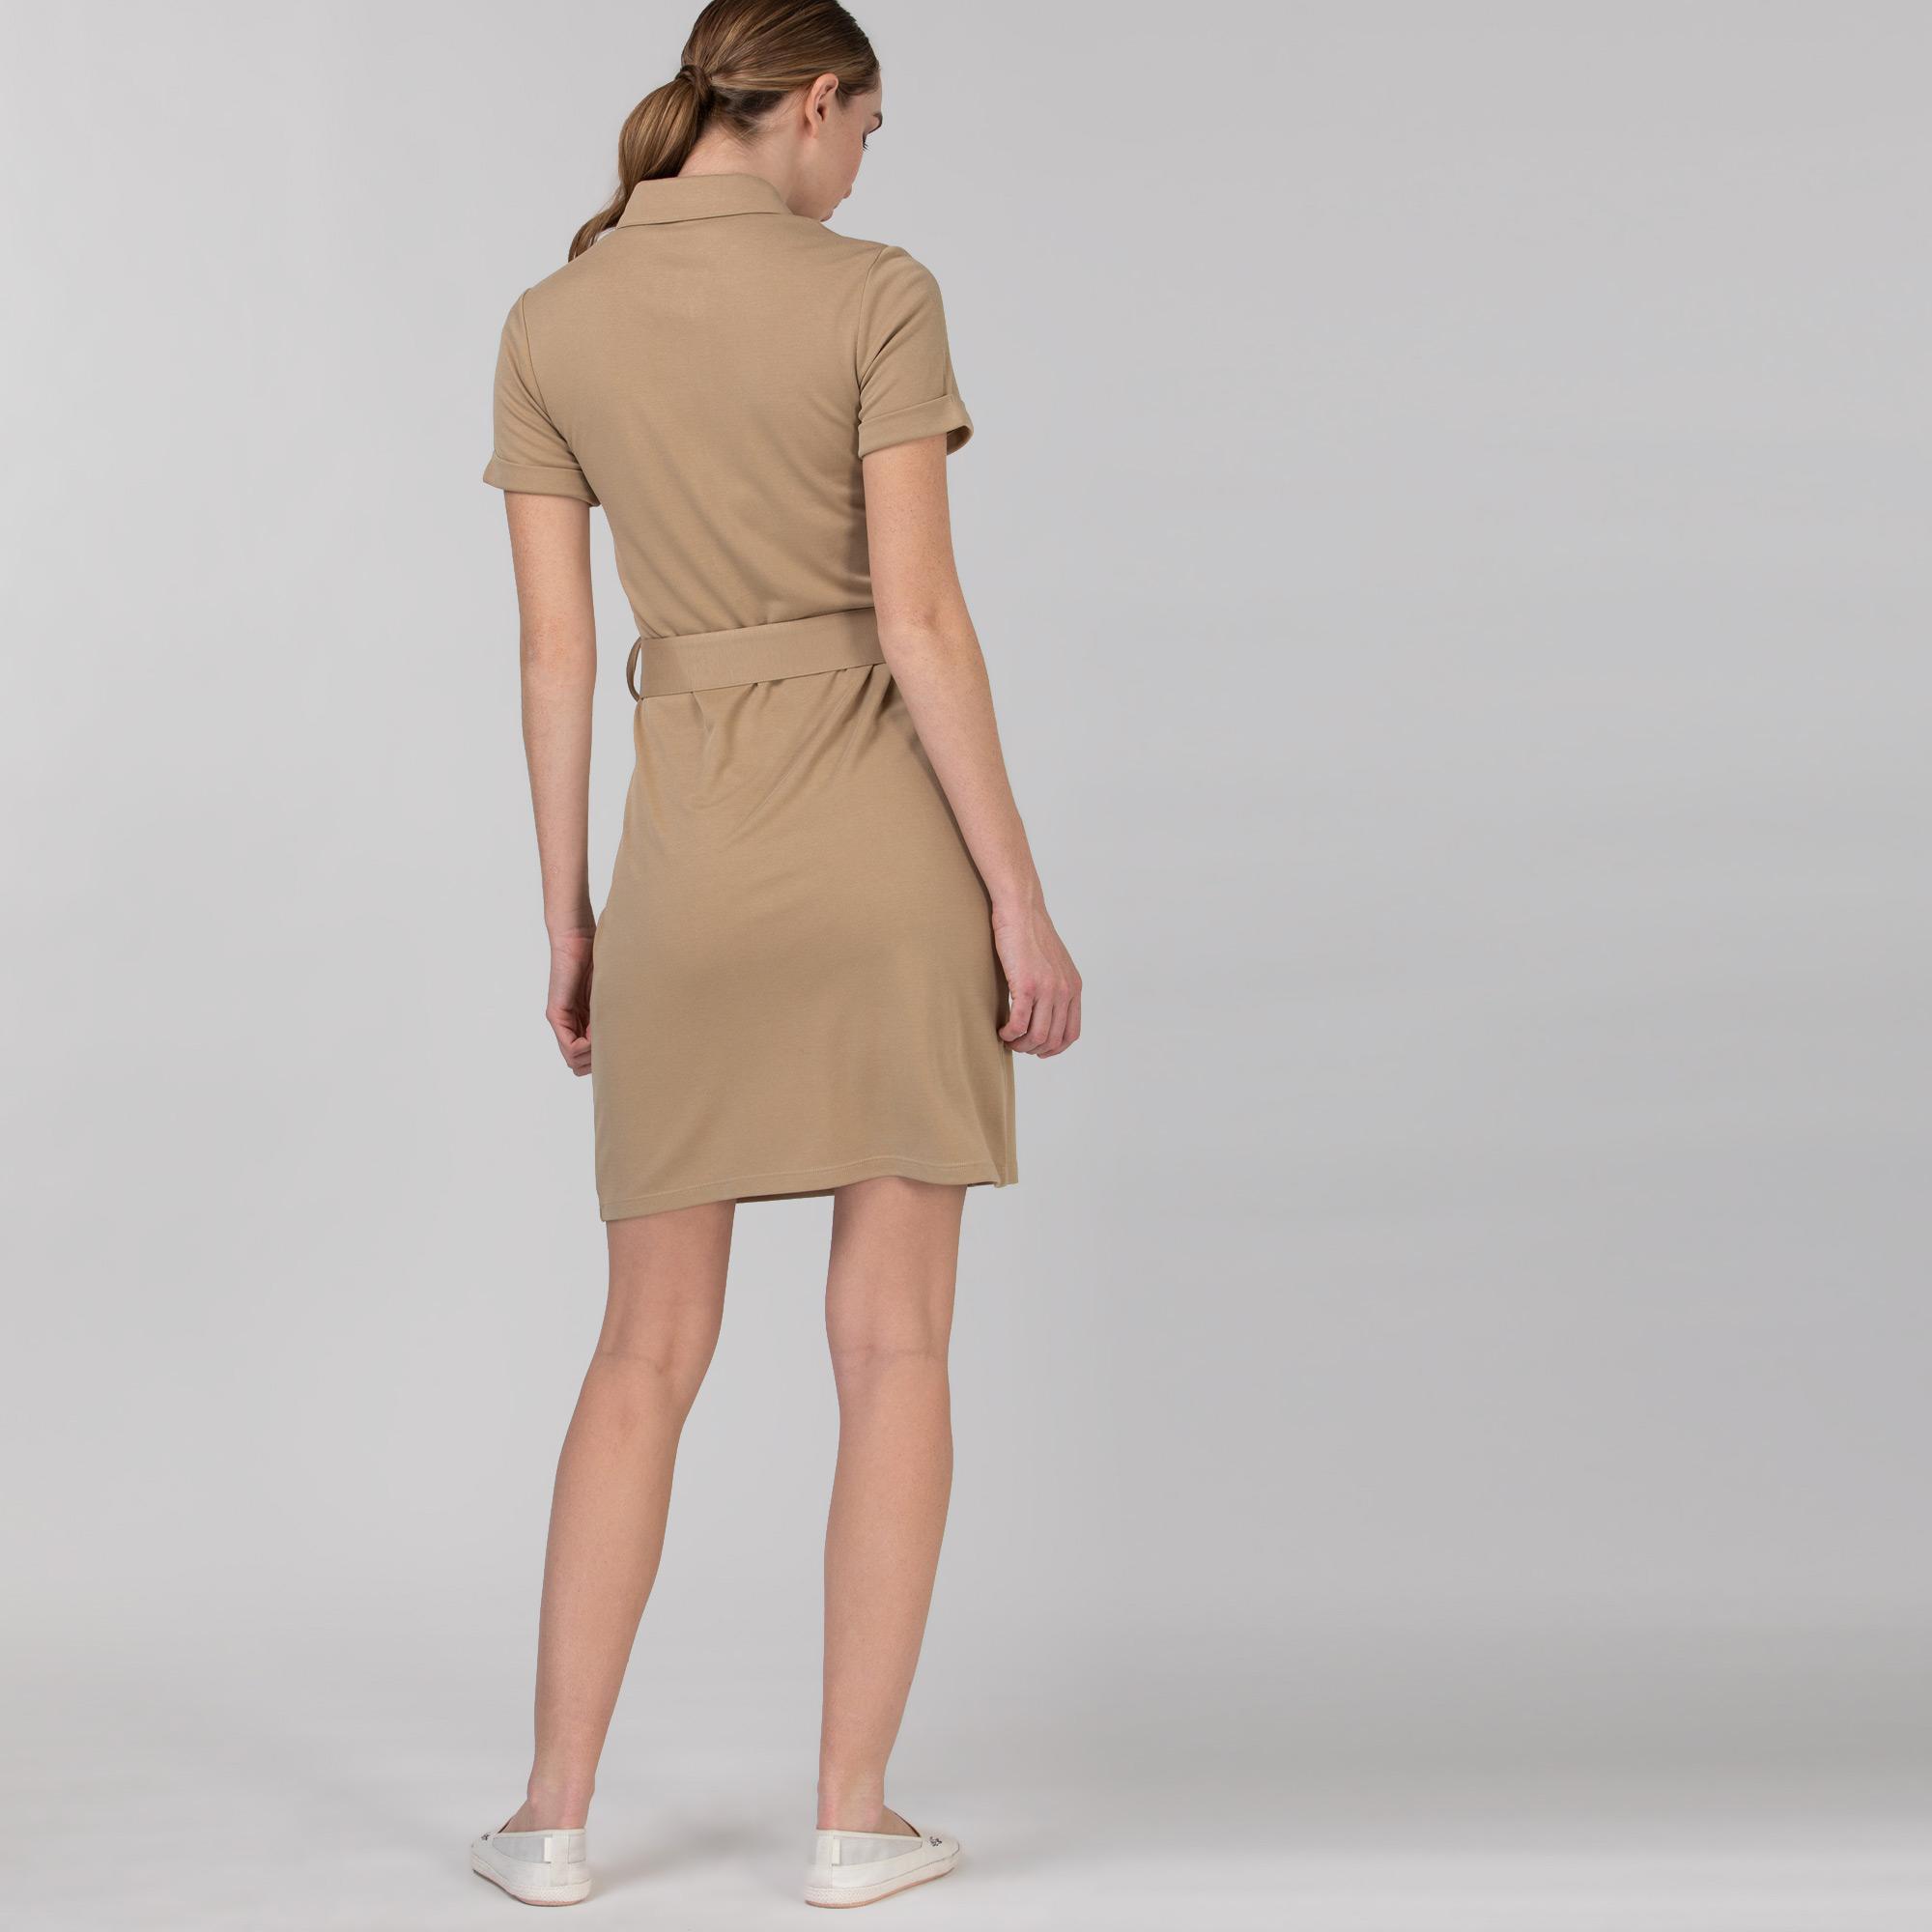 Lacoste Kadın Kısa Kollu Gömlek Yaka Açık Kahverengi Elbise. 5